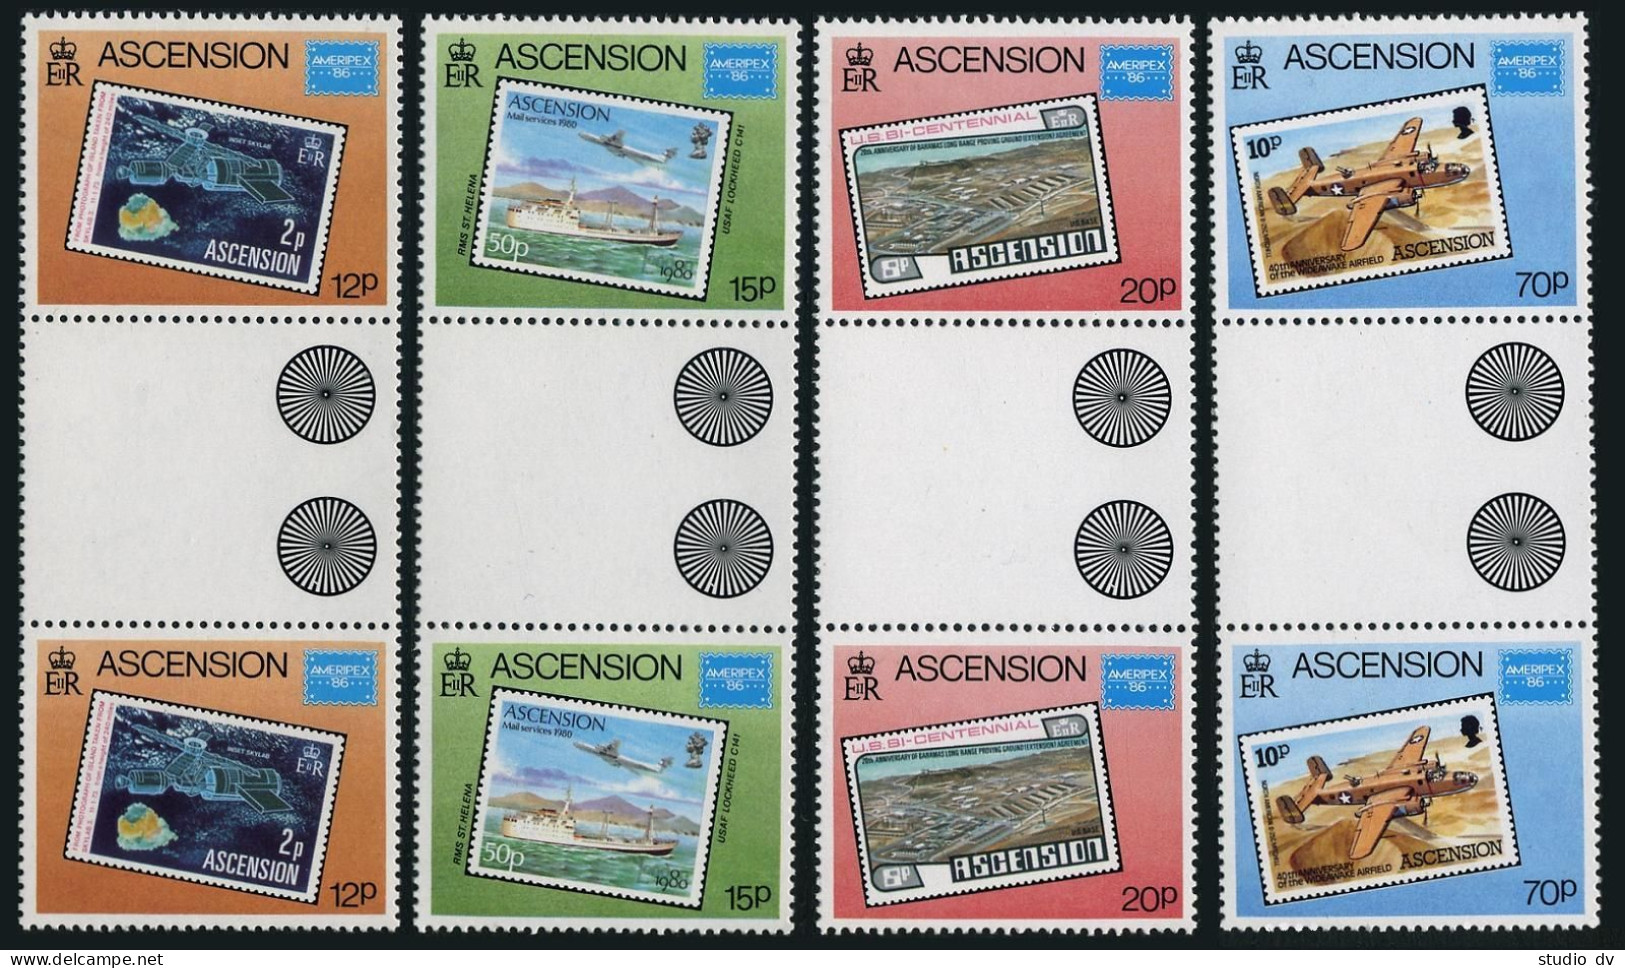 Ascension 394-397 Gutter,MNH.Mi 403-406. AMERIPEX-1986.Stamp On Stamp,Ship,Plane - Ascension